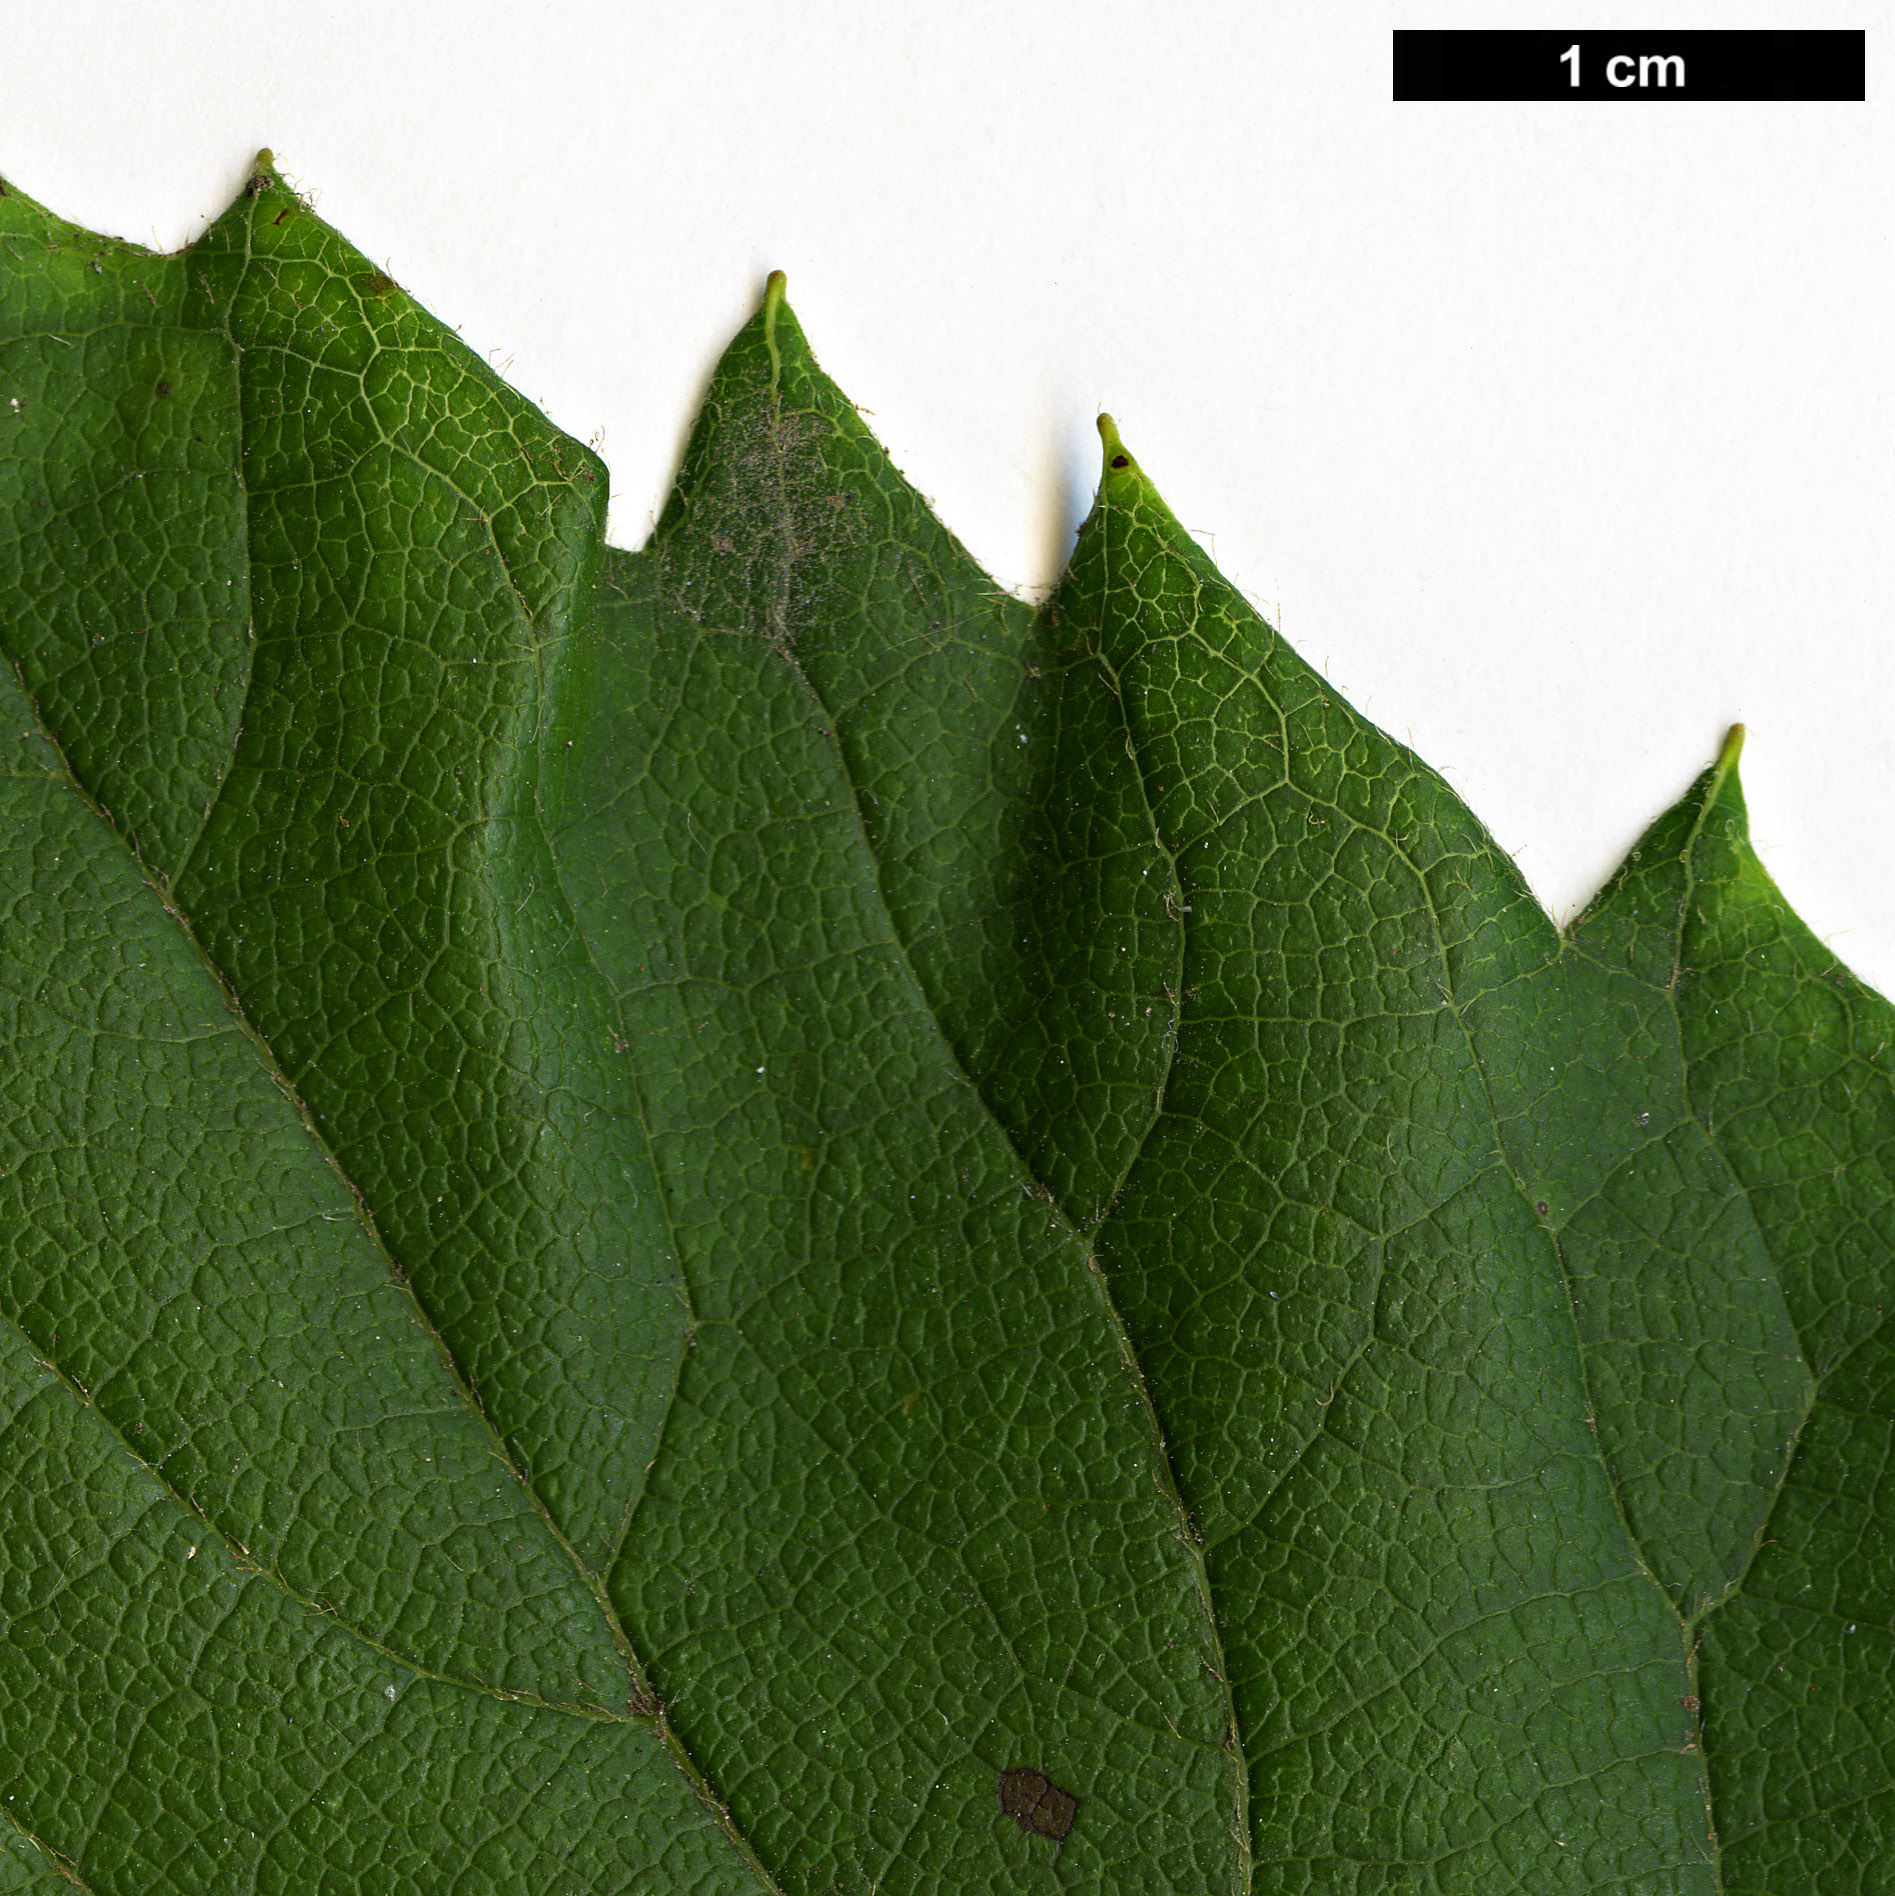 High resolution image: Family: Hydrangeaceae - Genus: Schizophragma - Taxon: hydrangeoides - SpeciesSub: f. quelpartensis